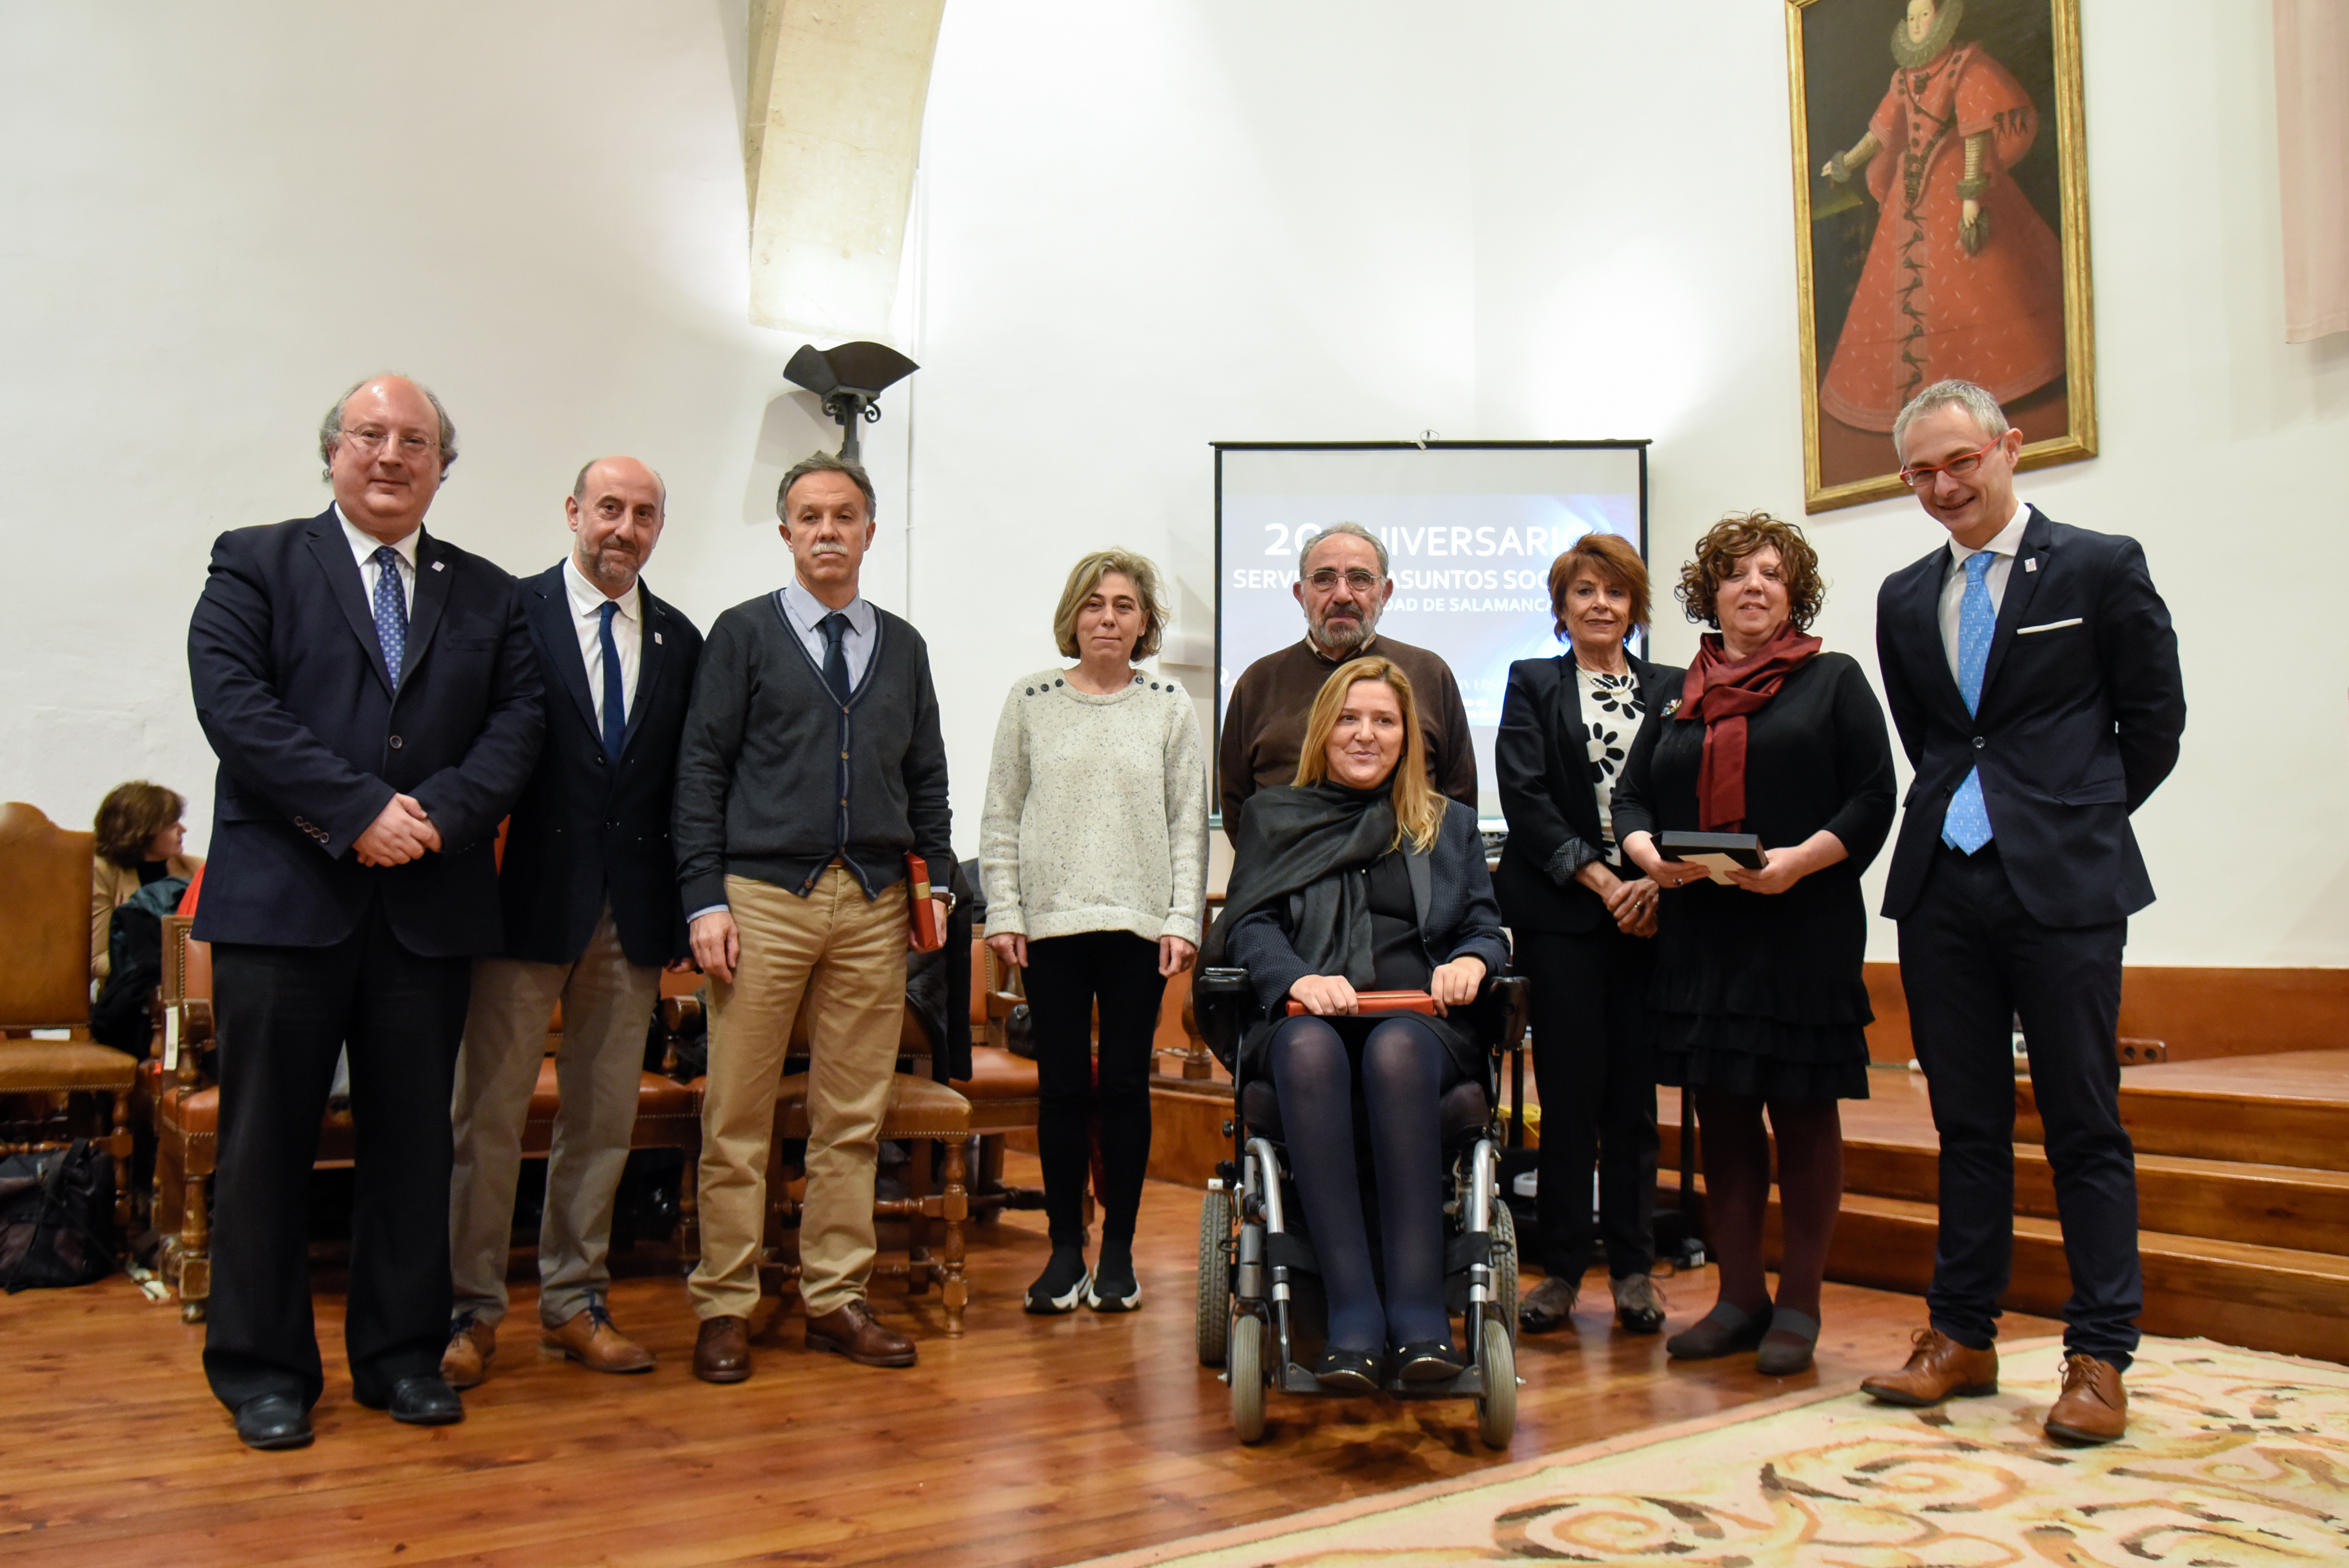 La Universidad de Salamanca celebra 20 años de apoyo al universitario y a la sociedad a través del Servicio de Asuntos Sociales